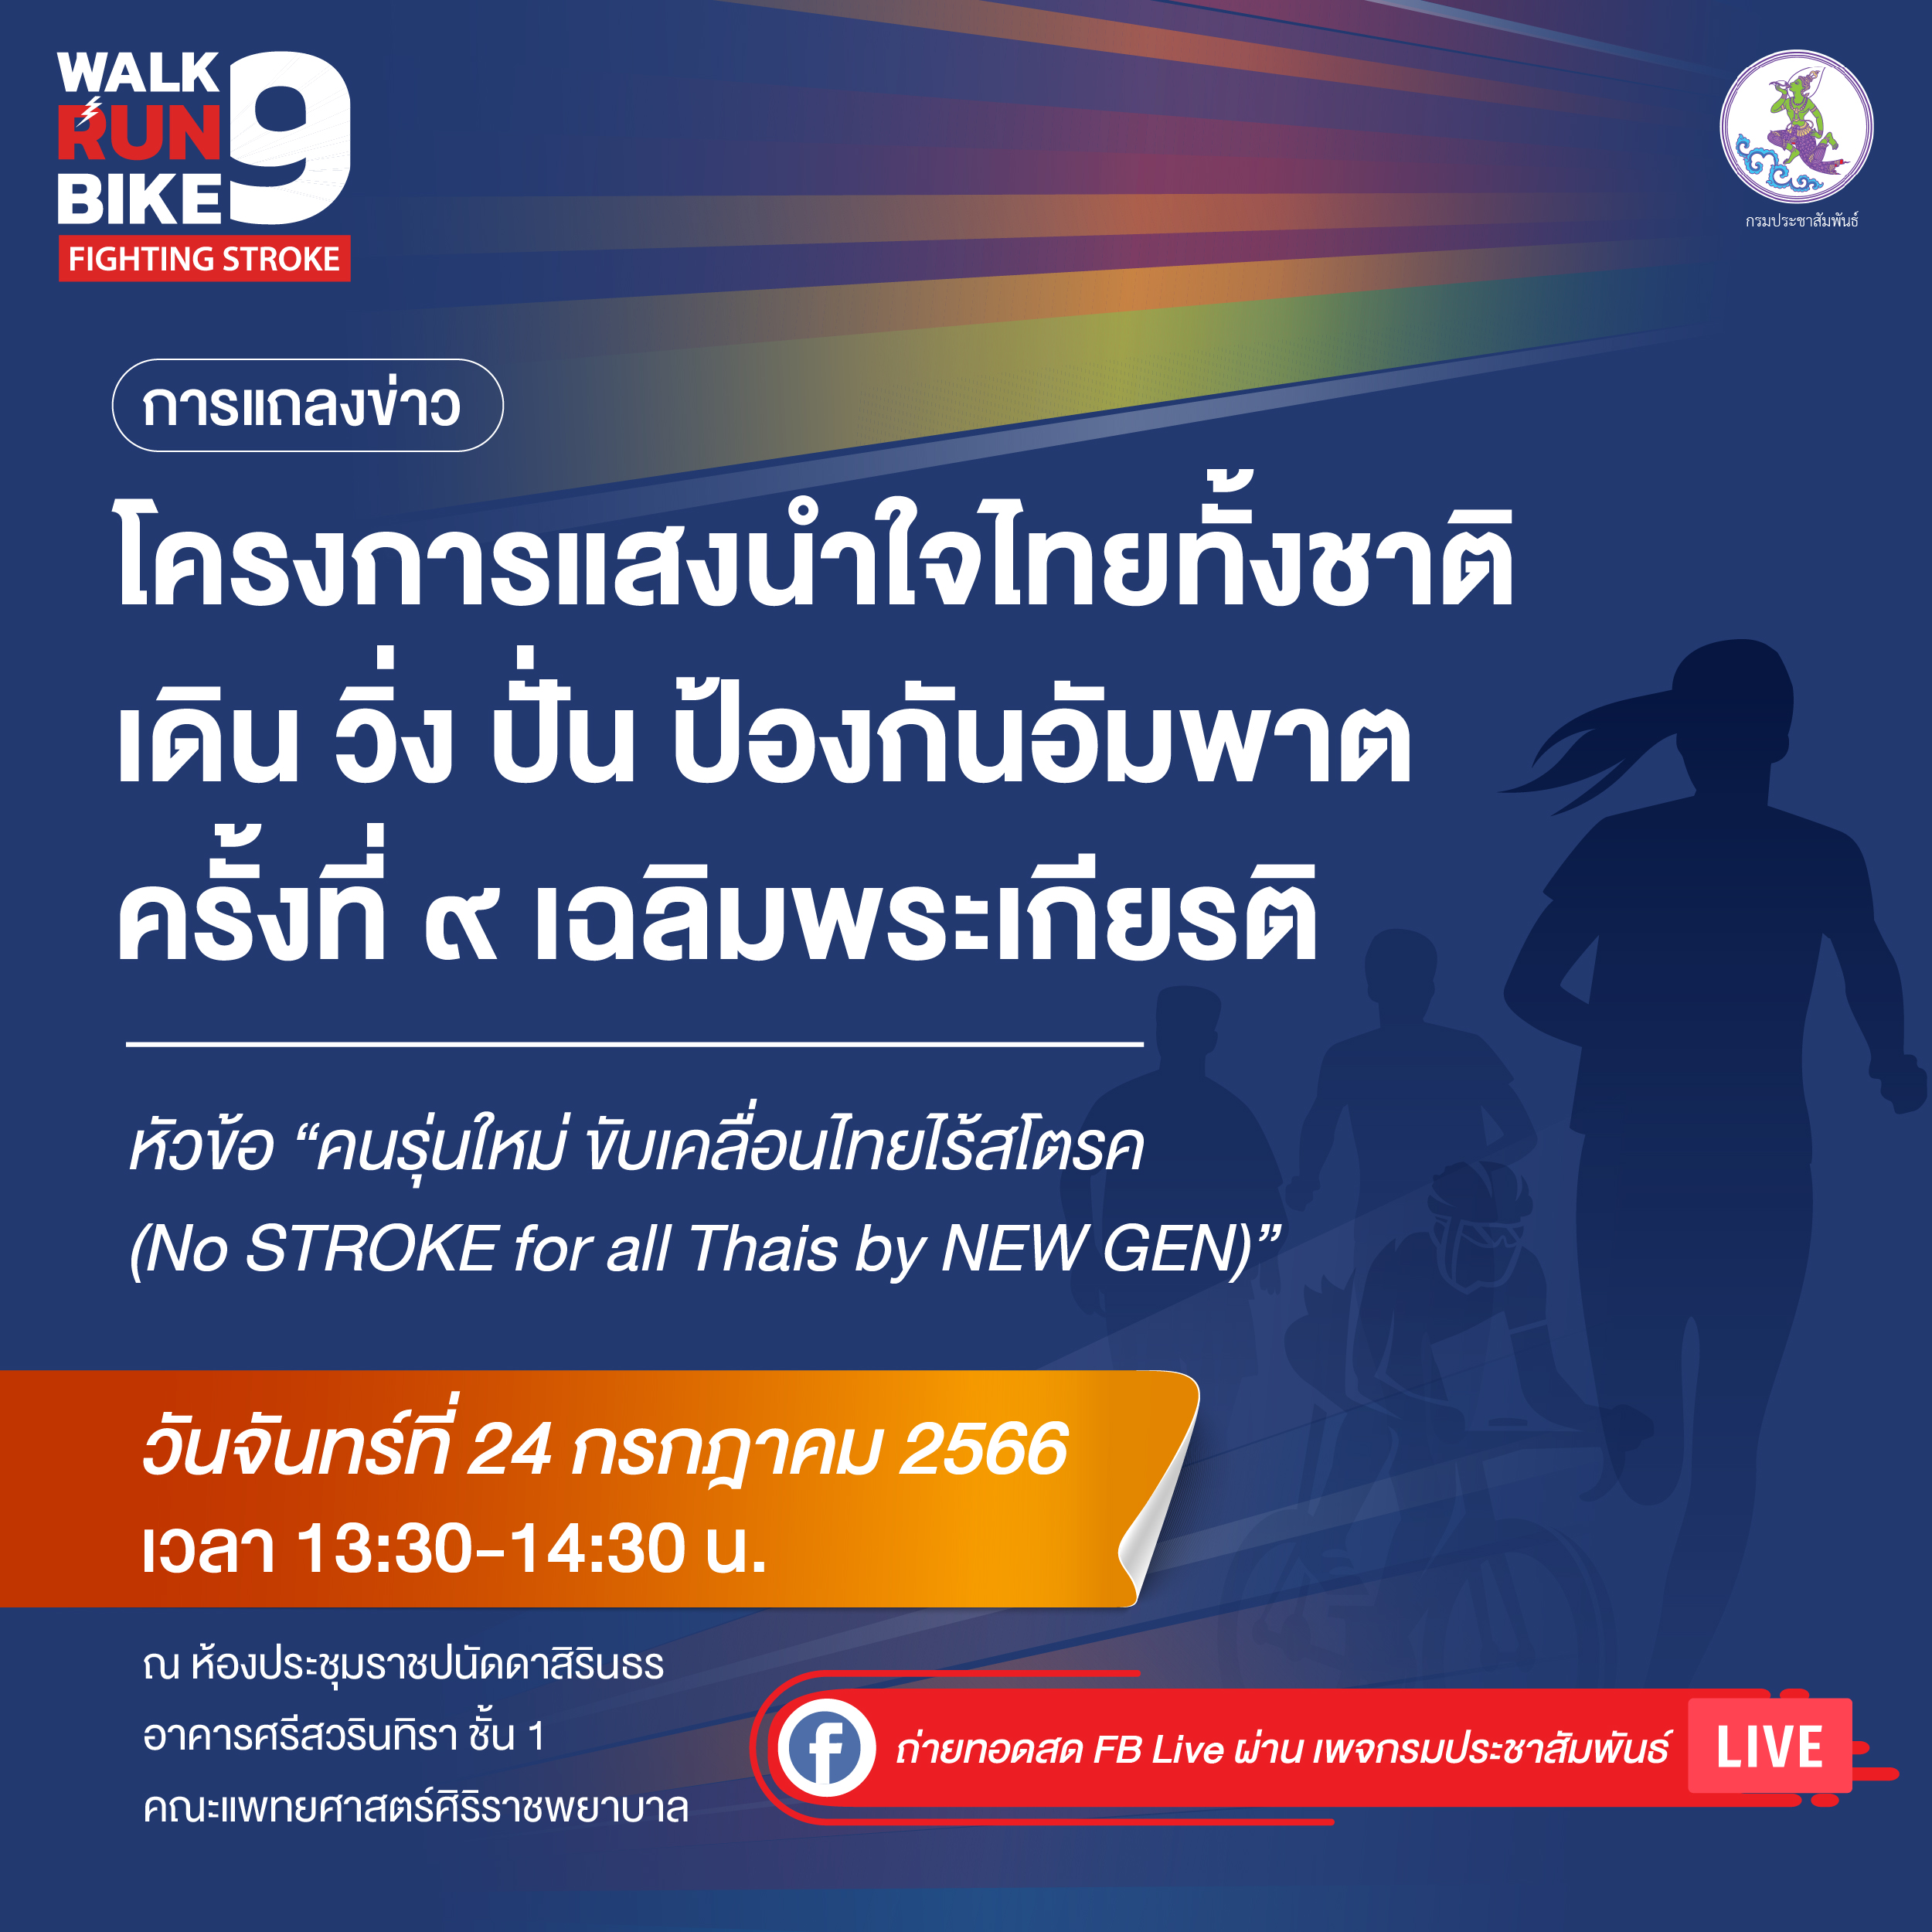 เชิญรับชมการแถลงข่าว "โครงการแสงนำใจไทยทั้งชาติ เดิน วิ่ง ปั่น ป้องกันอัมพาต ครั้งที่ ๙ เฉลิมพระเกียรติ" ในวันจันทร์ที่ 24 กรกฎาคม 2566 เวลา 13.30-14.30 น.